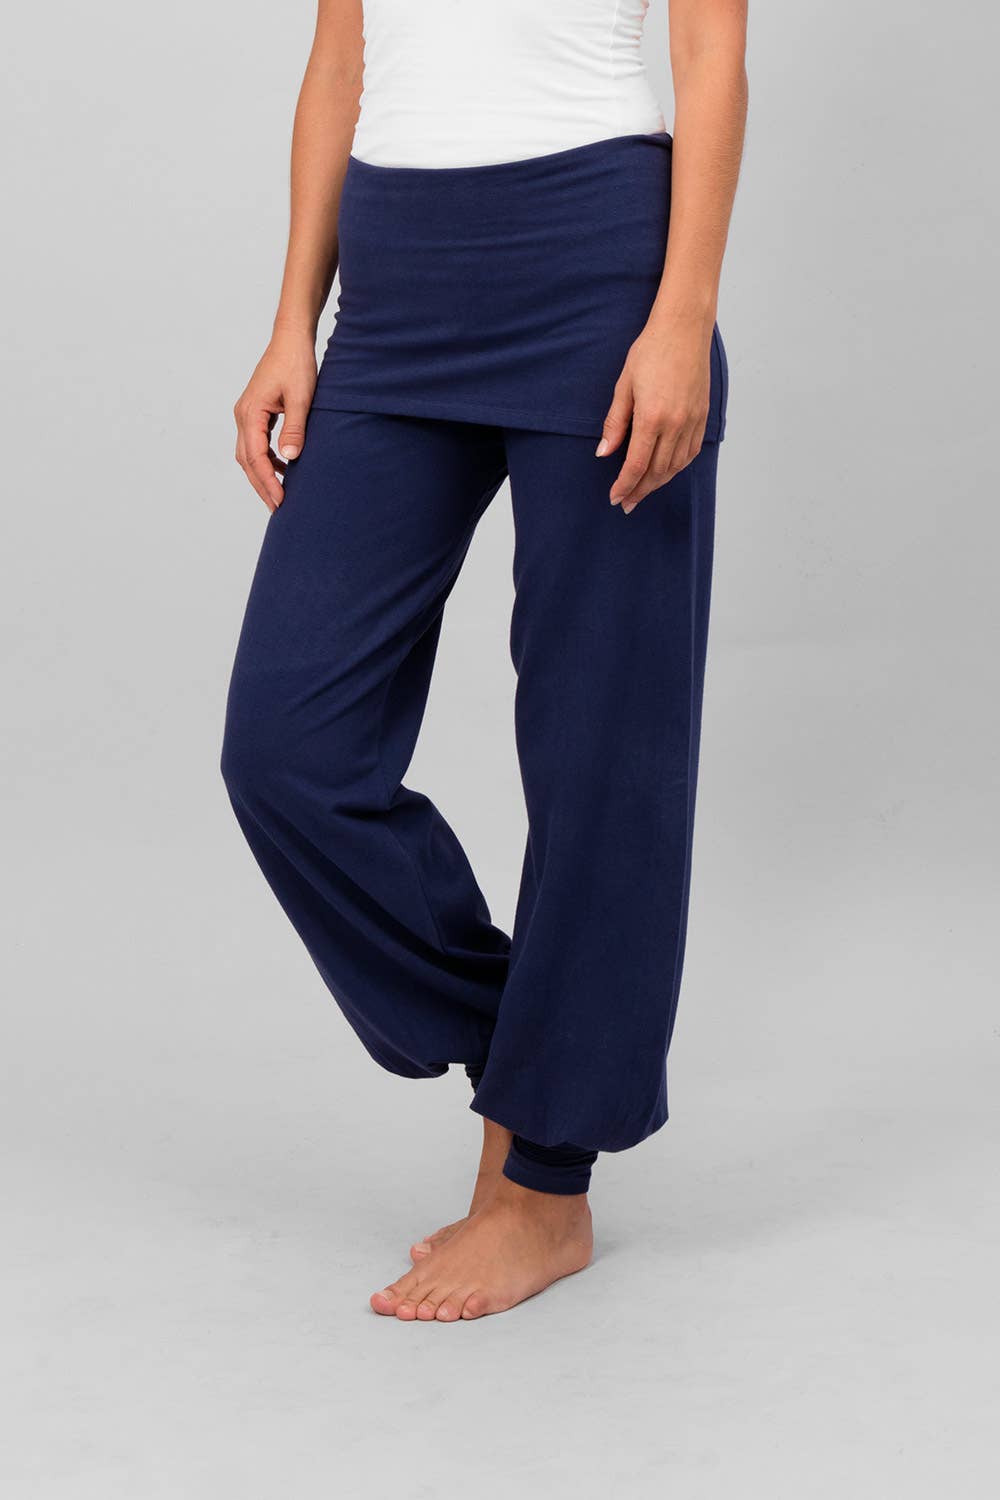 Sohang yoga pants - Atlantic blue